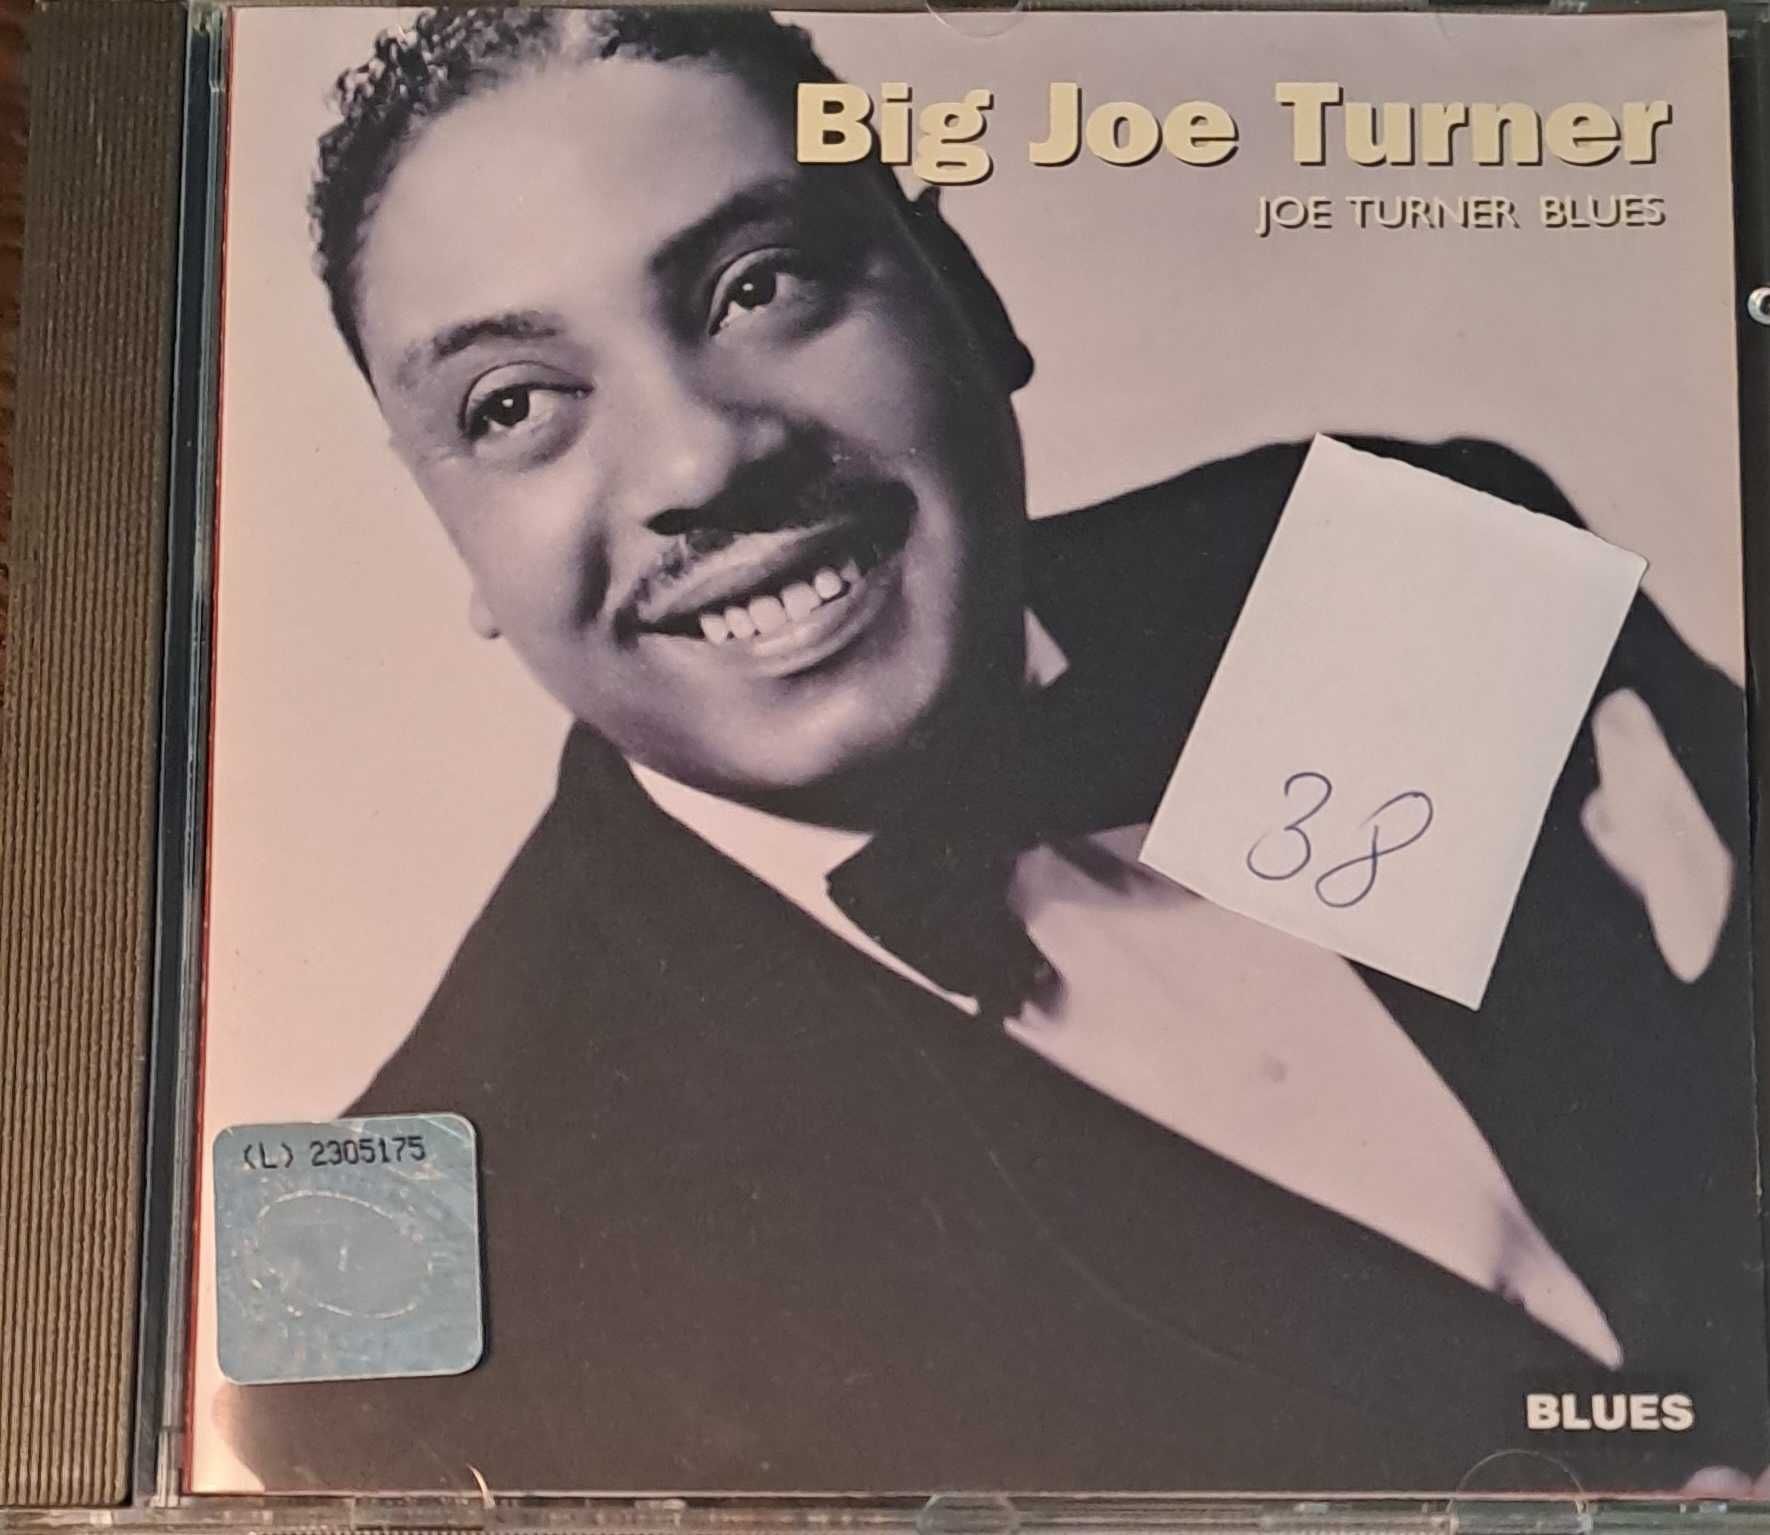 Big Joe Turner - "Joe Turner Blues"